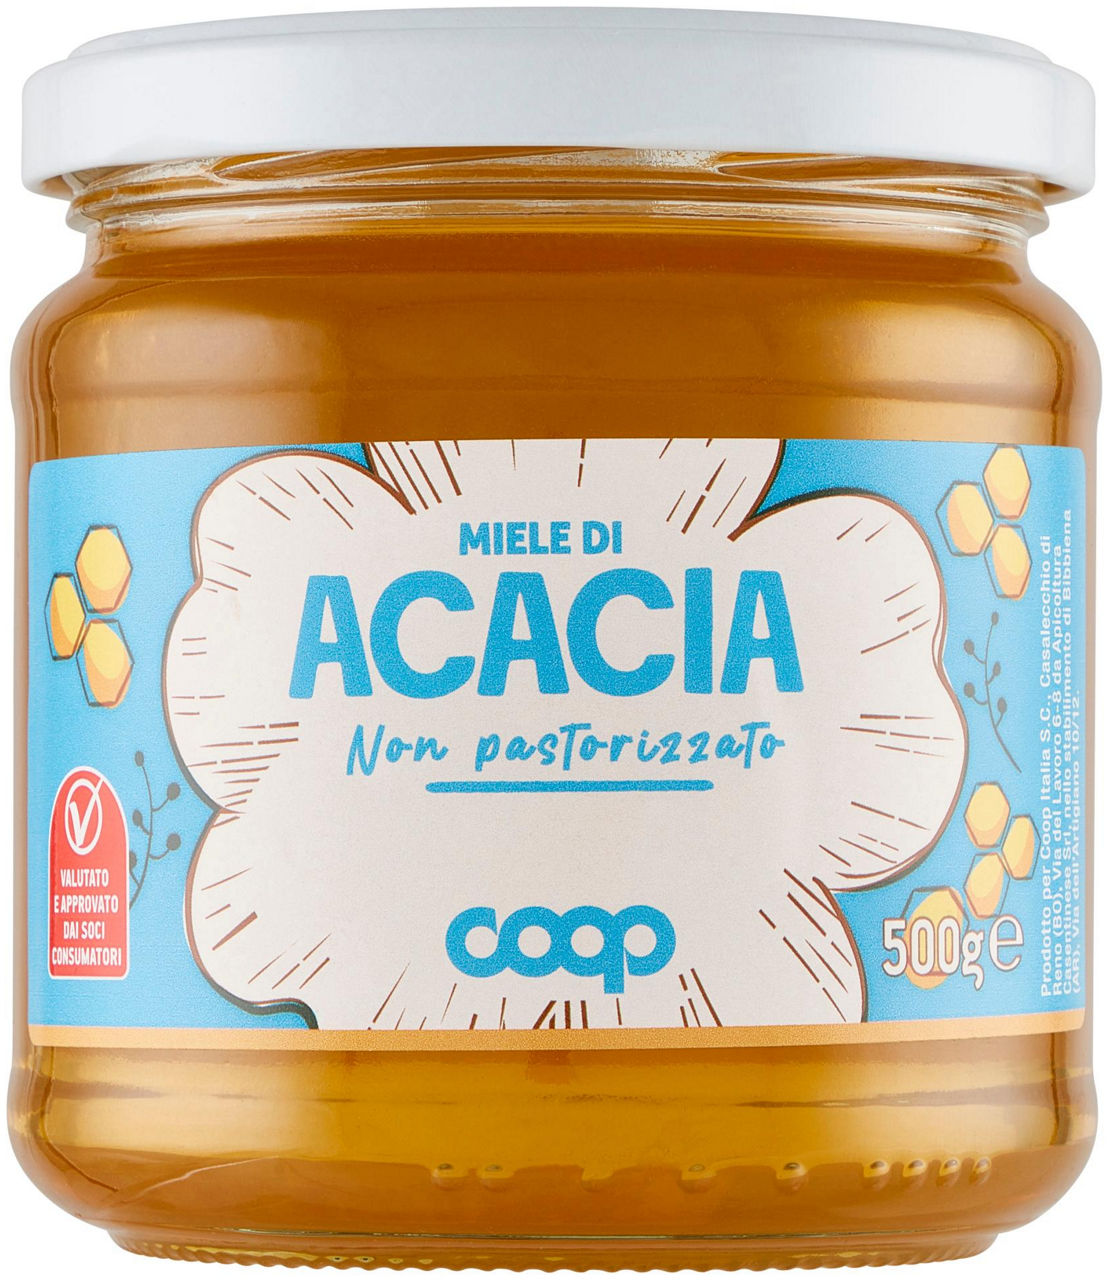 Miele di acacia 500 g